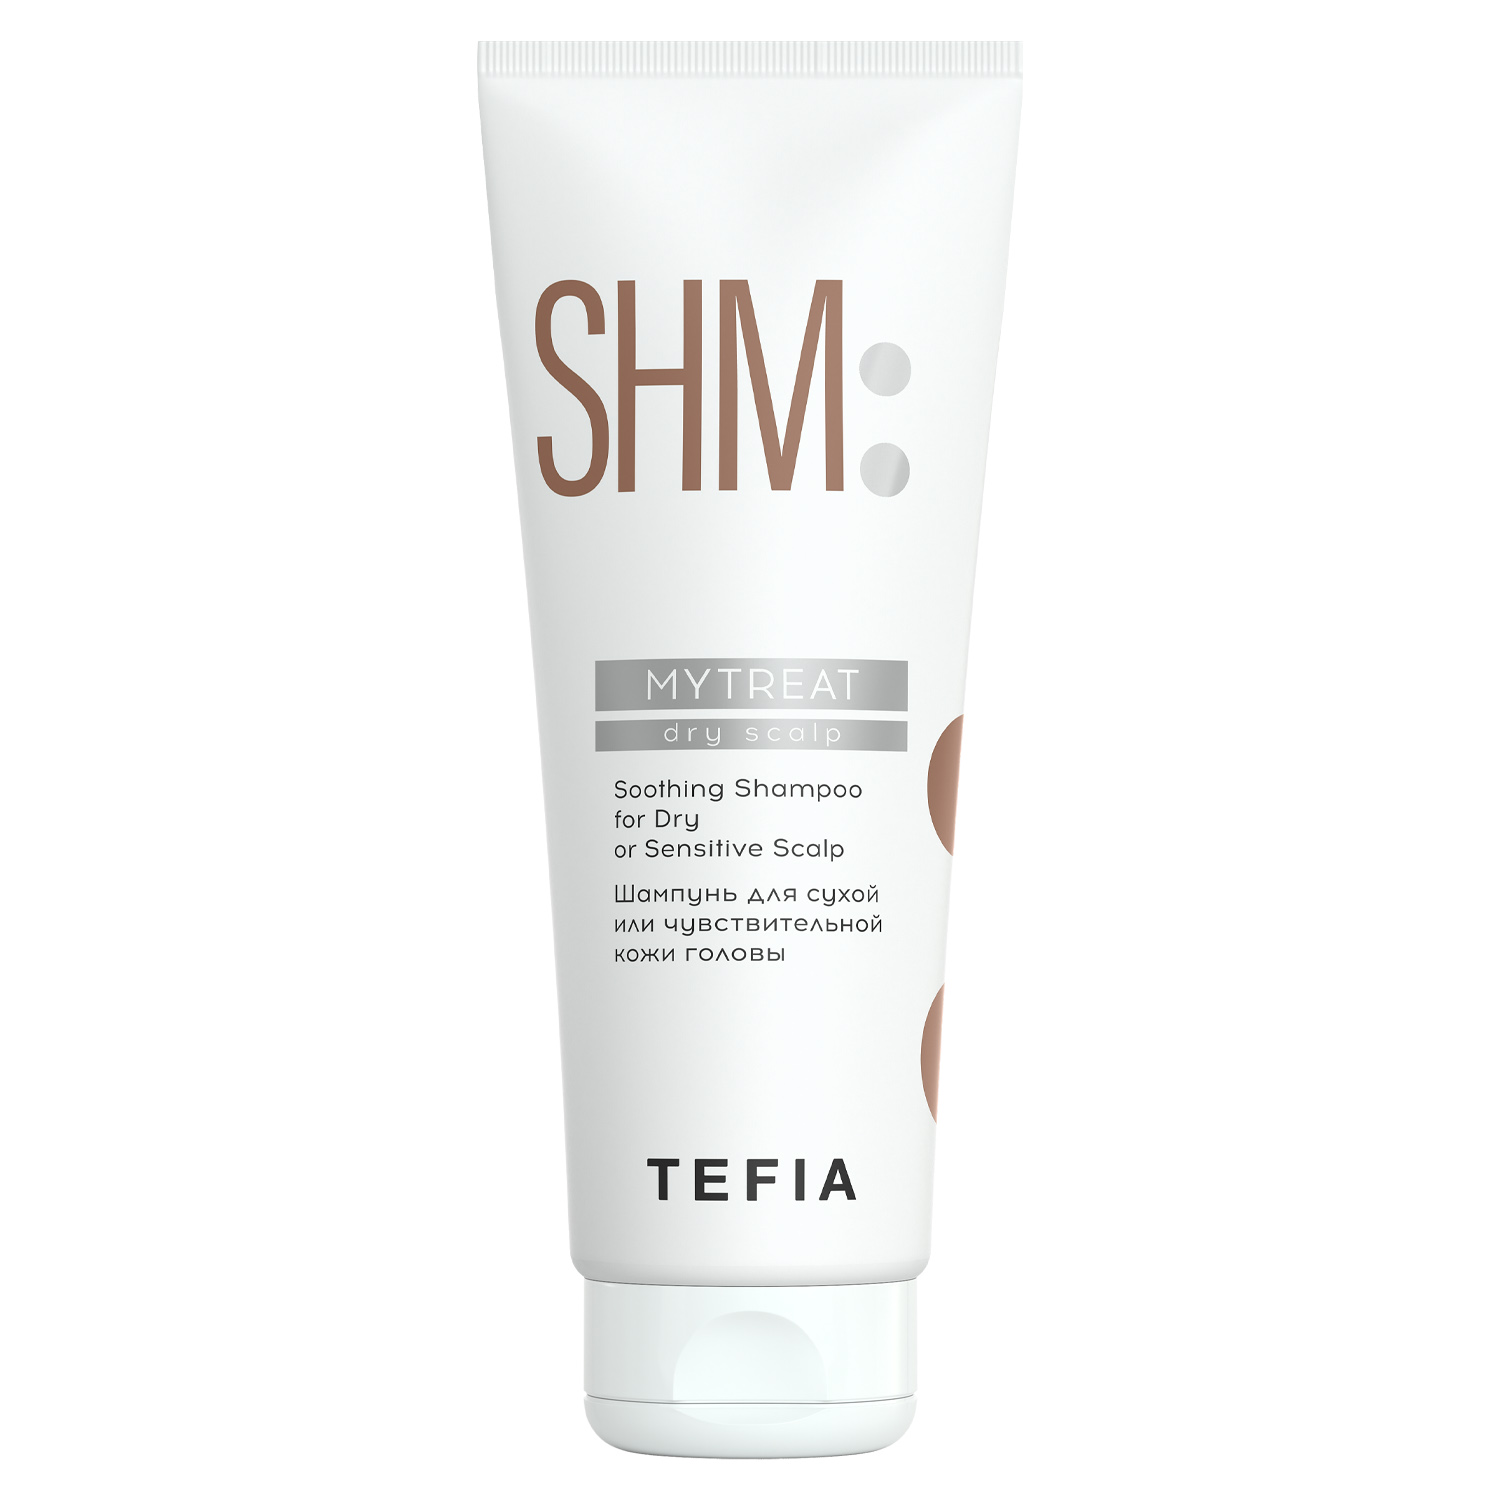 Tefia Шампунь для сухой или чувствительной кожи головы, 250 мл (Tefia, MyTreat) tefia шампунь для нормальной кожи головы mytreat 250 мл